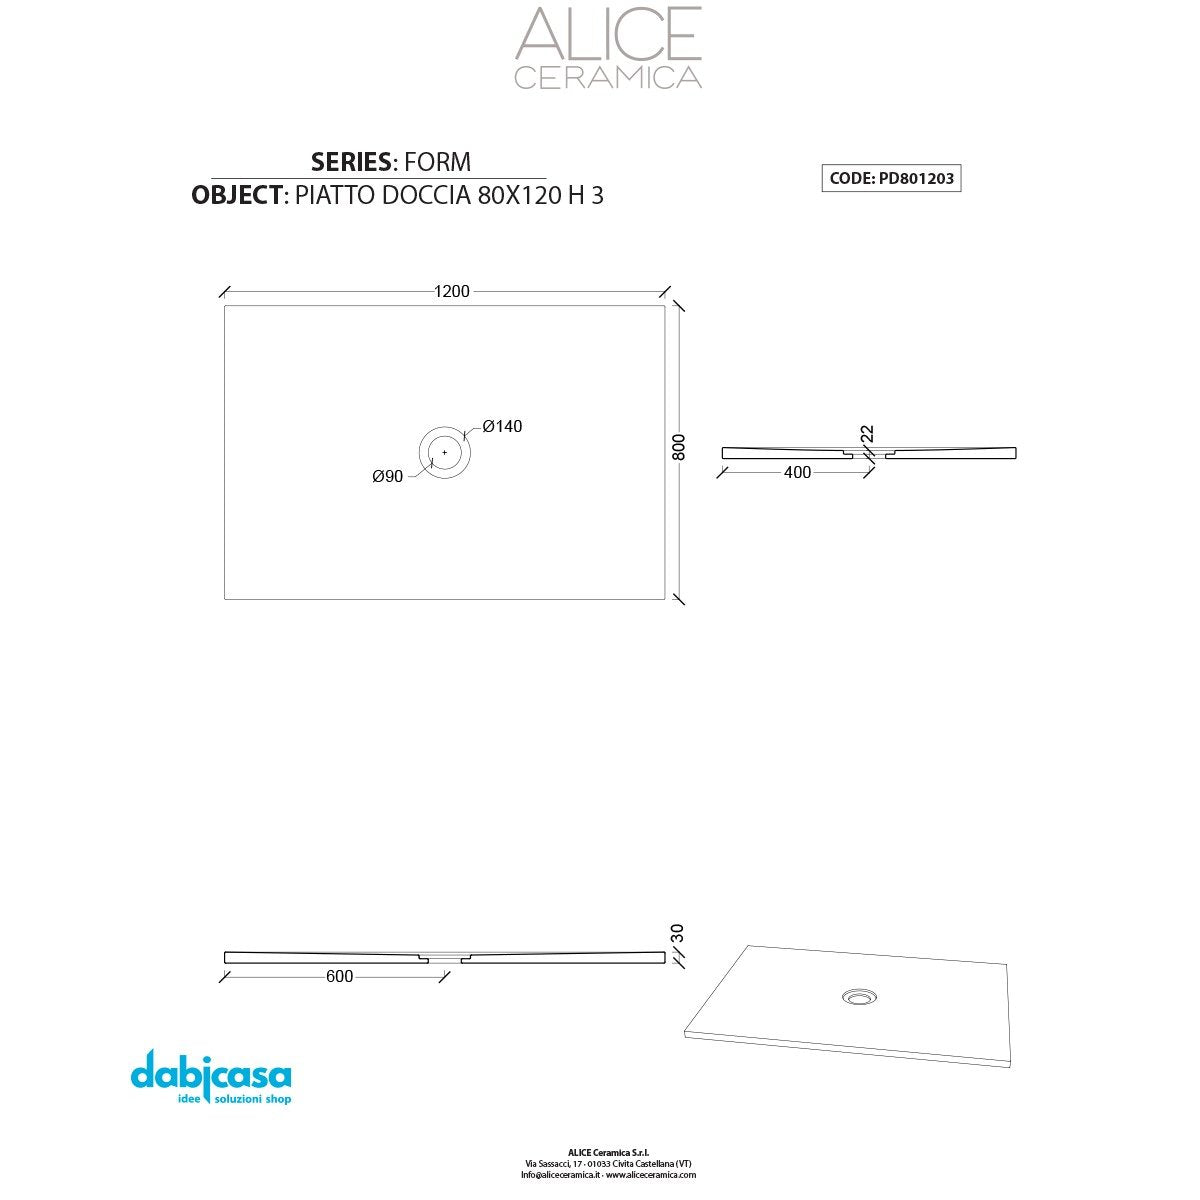 Piatto Doccia Alice Ceramica "Serie Form" 80x120 cm 3H Colore Bianco Opaco freeshipping - Dabicasa